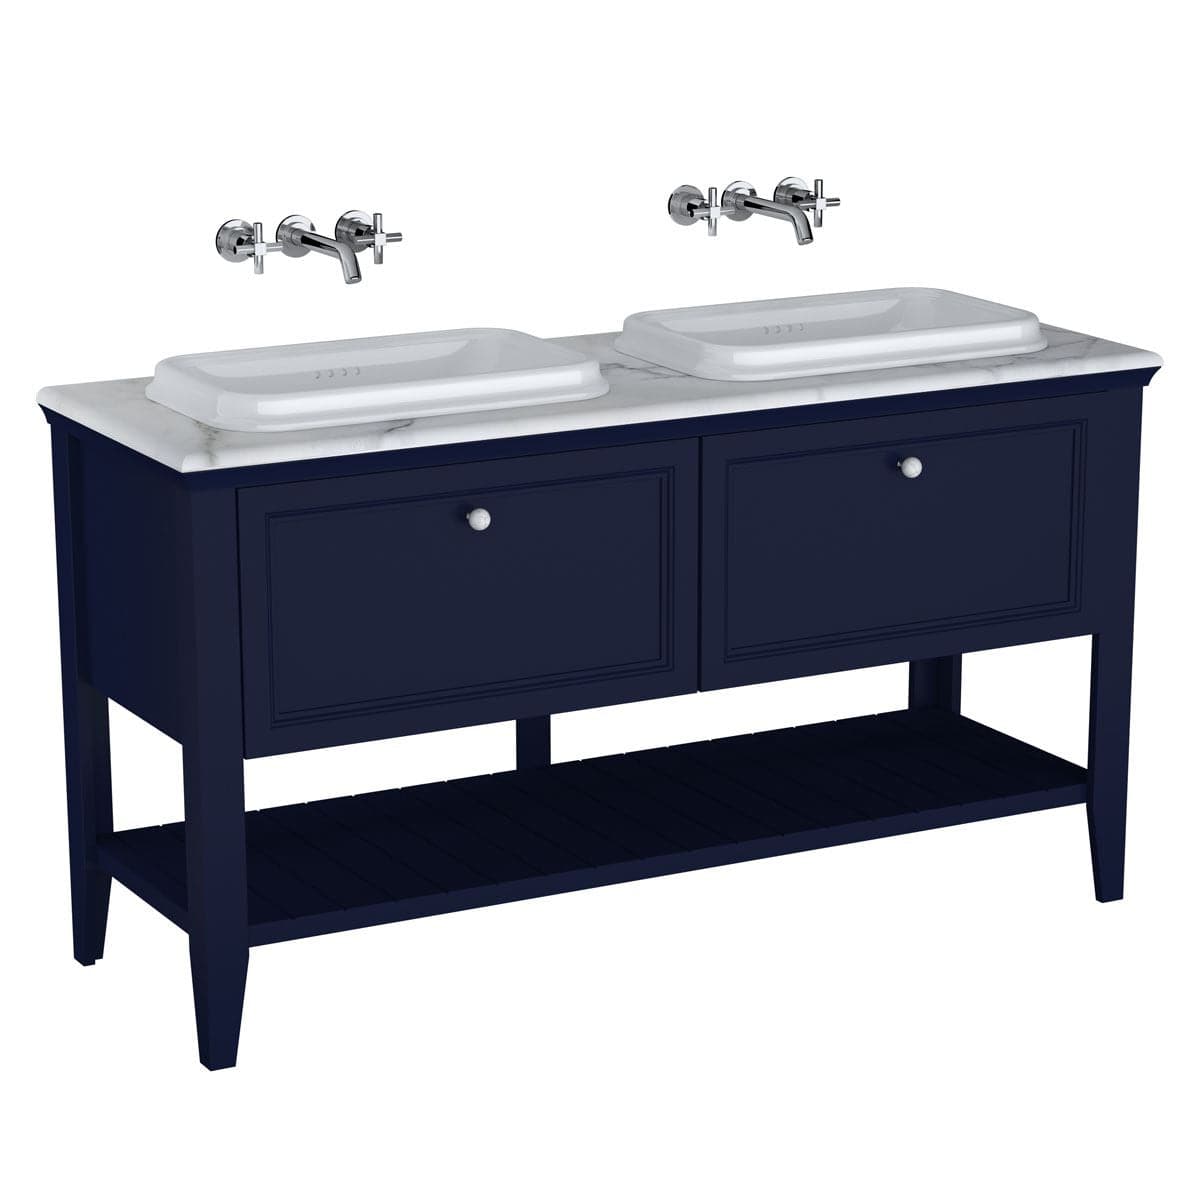 VitrA Valarte Set 150 cm 2 Einbauwaschtische + Waschtischunterschrank 2 Laden Stahlblau (Lack)